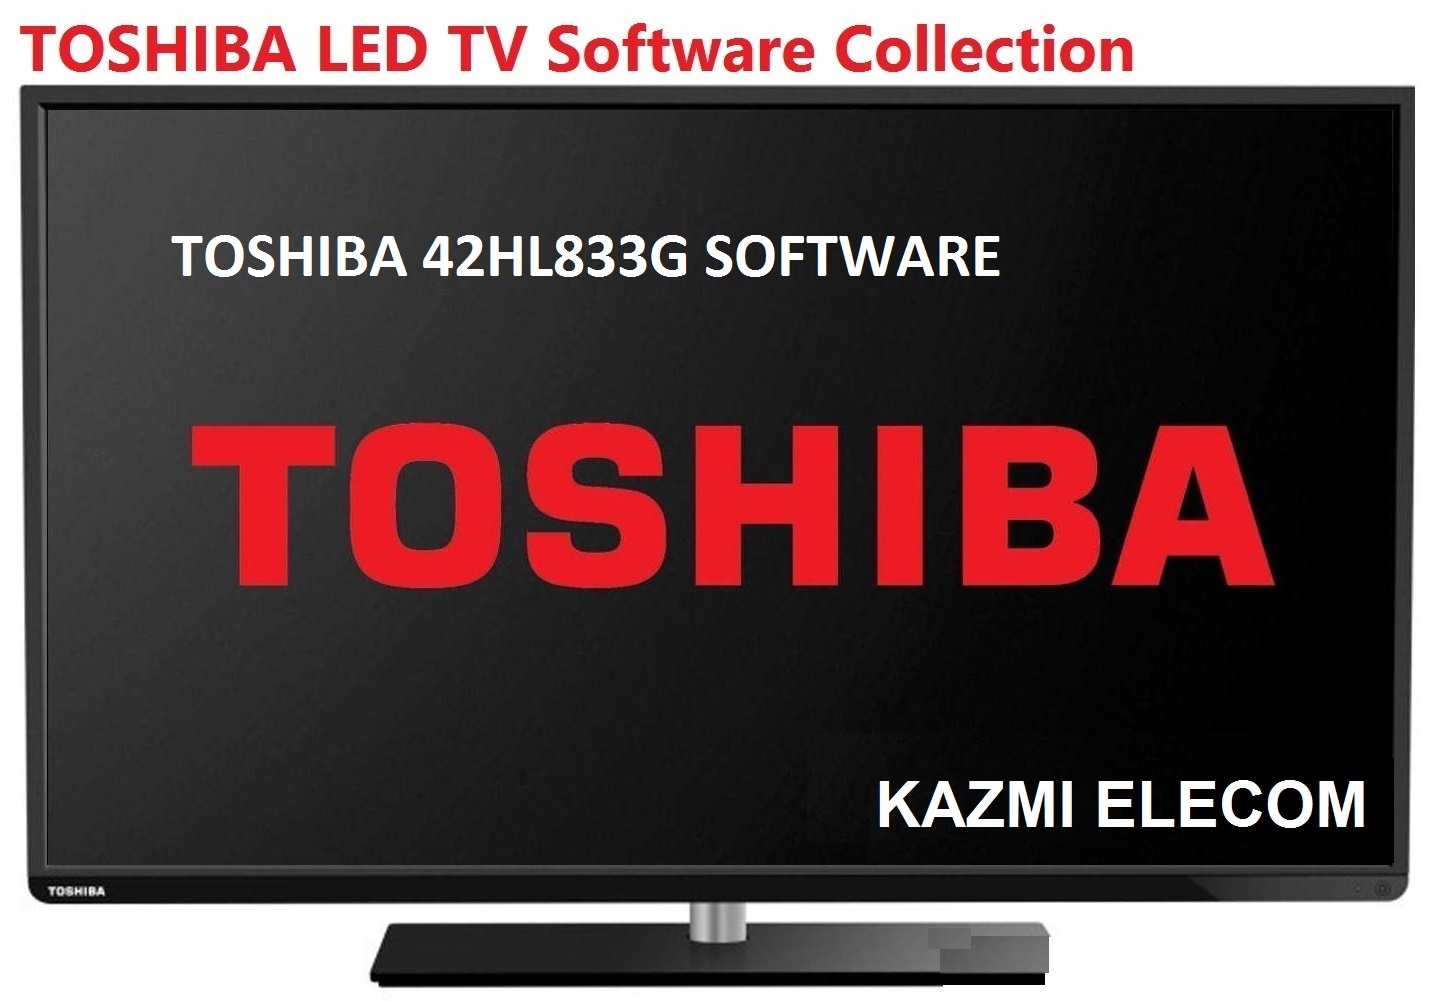 Toshiba 42Hl833G